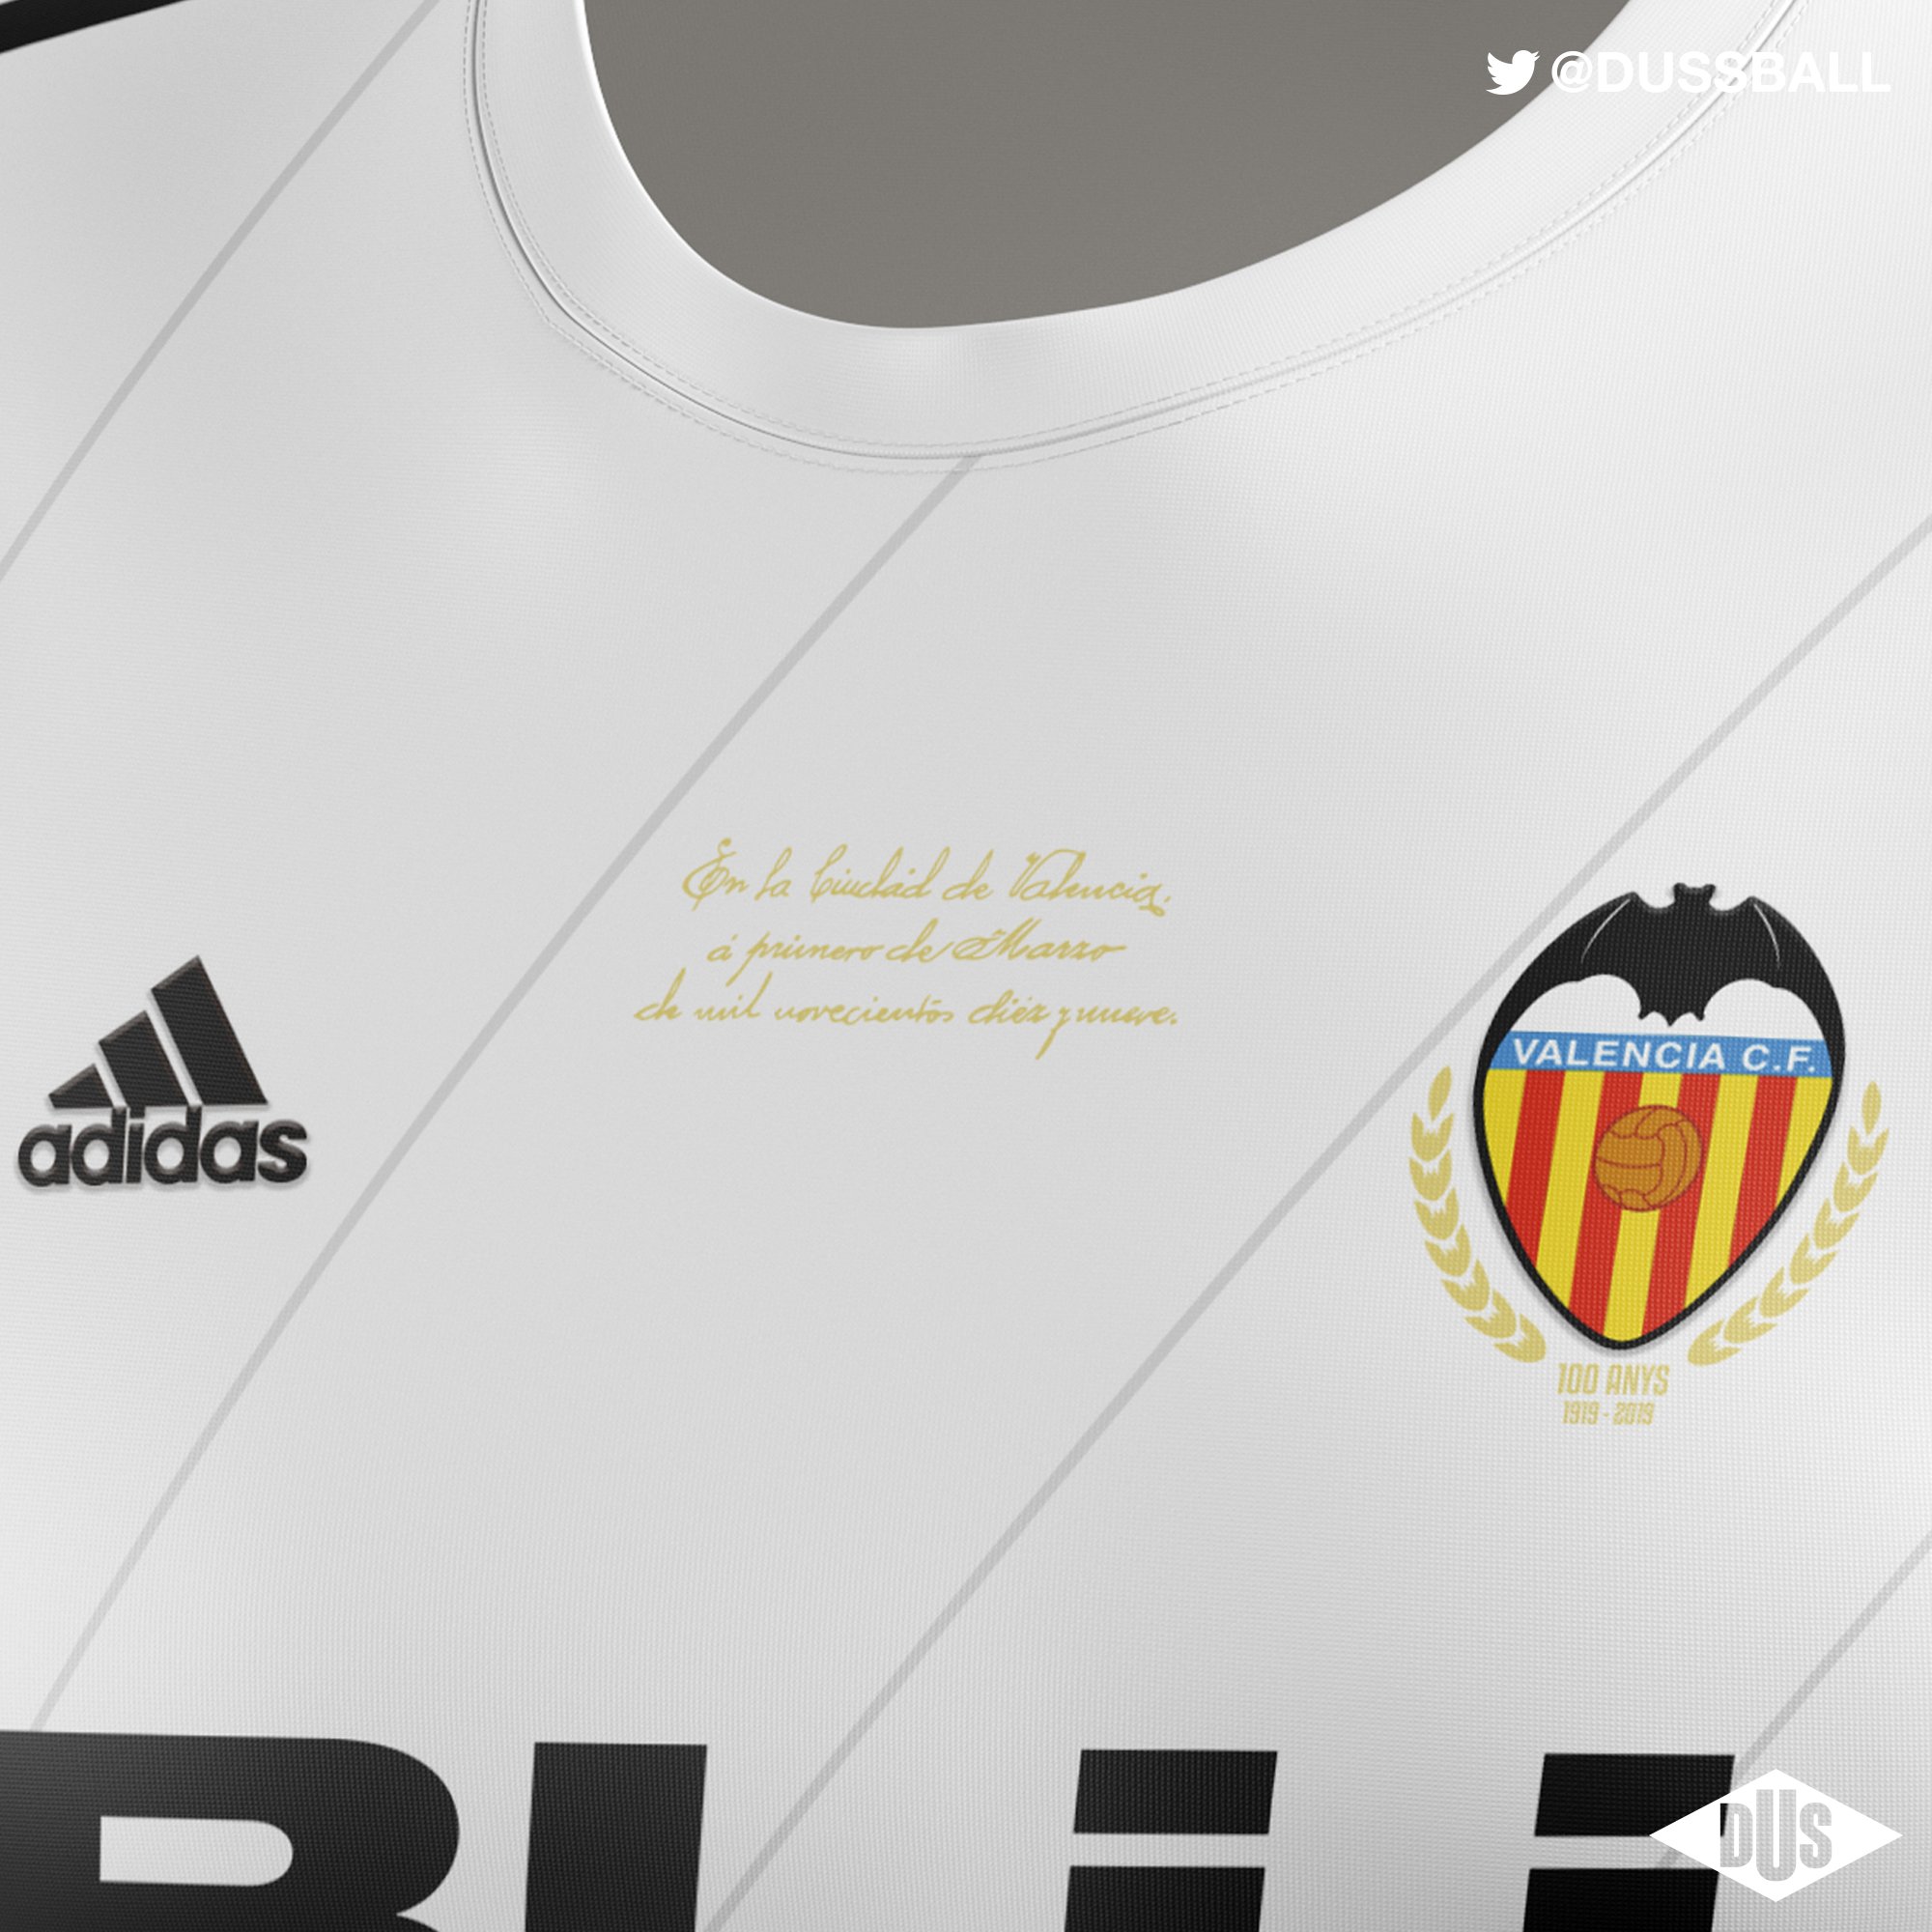 Pepe Dus on Twitter: | Camiseta CENTENARIO @valenciacf. Una equipación utilizada como lienzo el blanco que celebrar 100 años de historia. Va HILO. https://t.co/gDYcELA62c" / Twitter